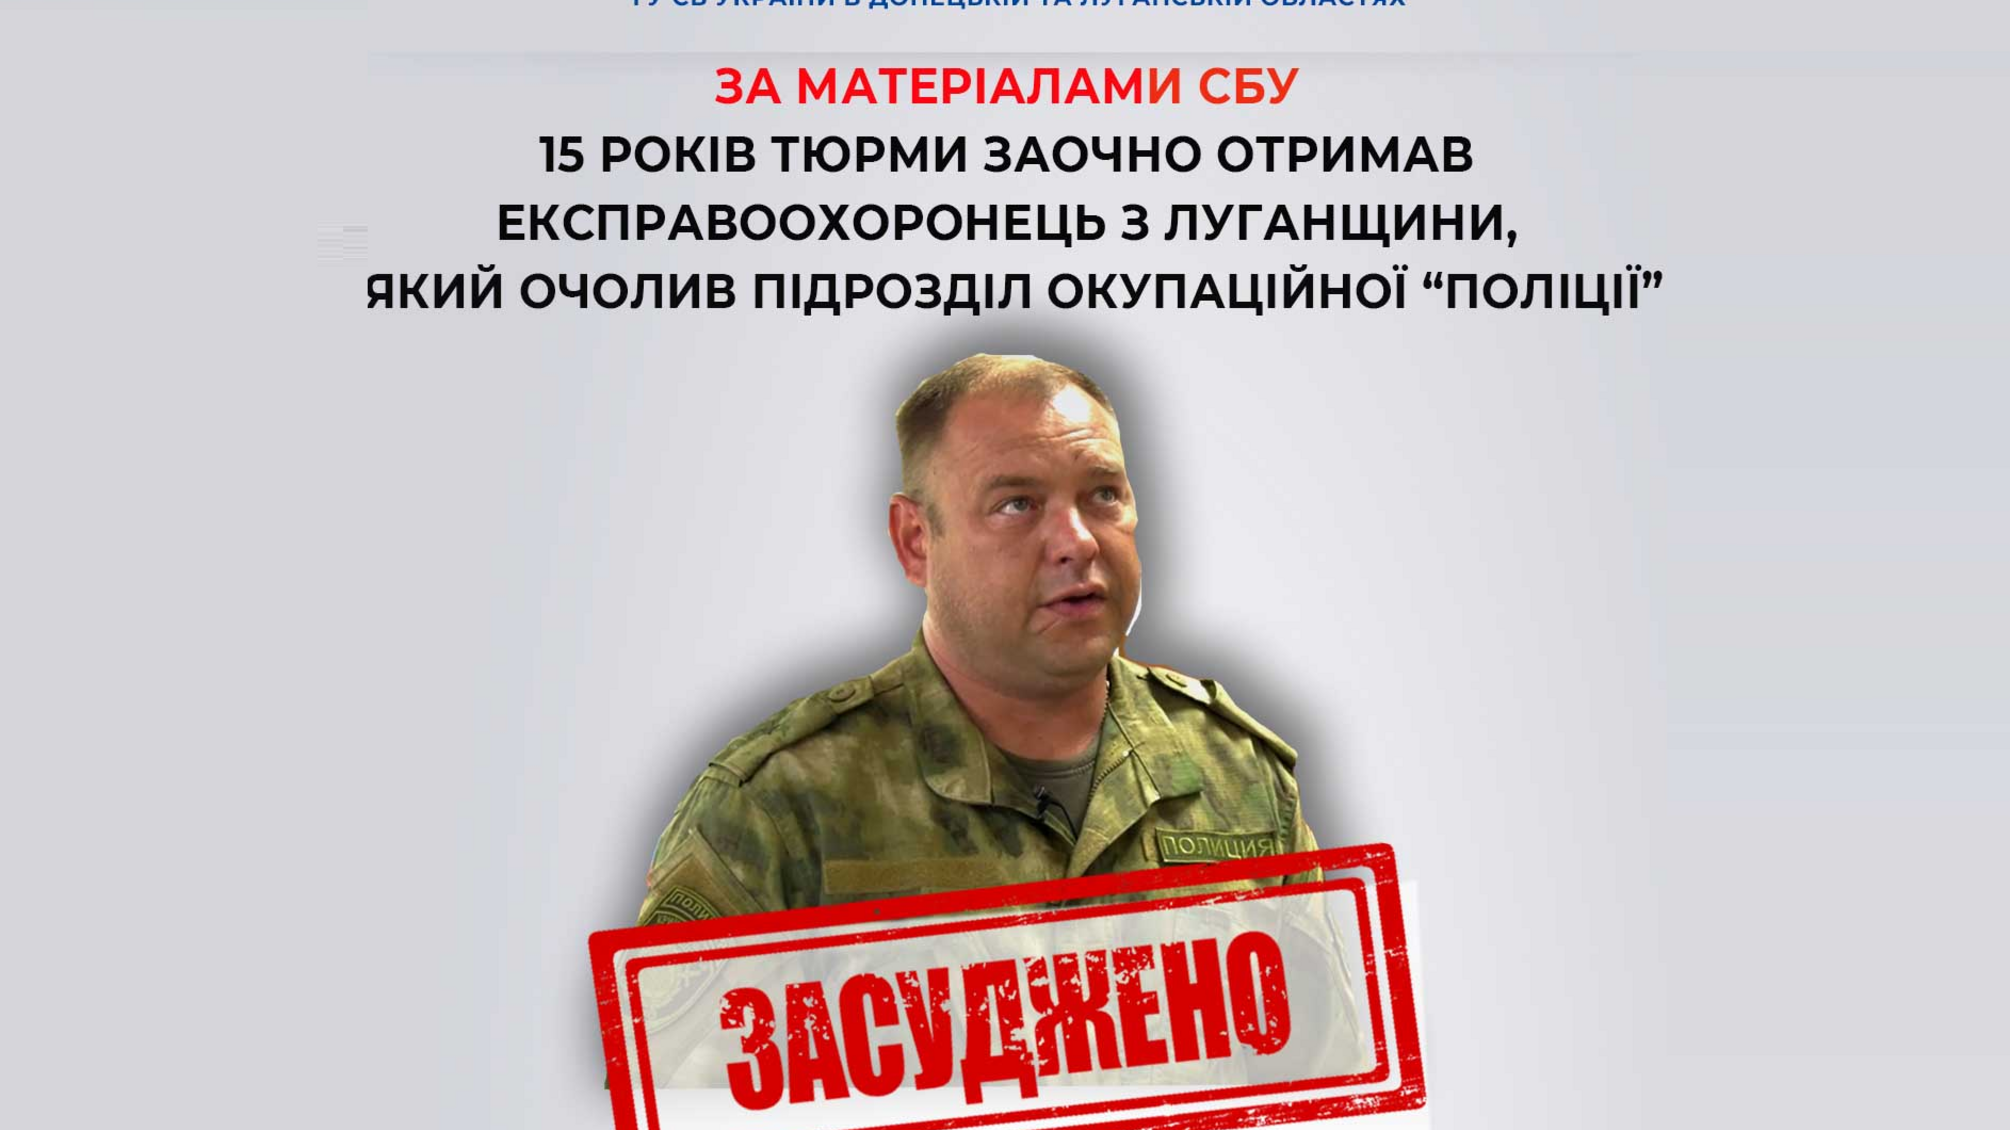 Екскправоохоронця, який очолив підрозділ окупаційної 'поліції' на Луганщині, засудили на 15 років заочно